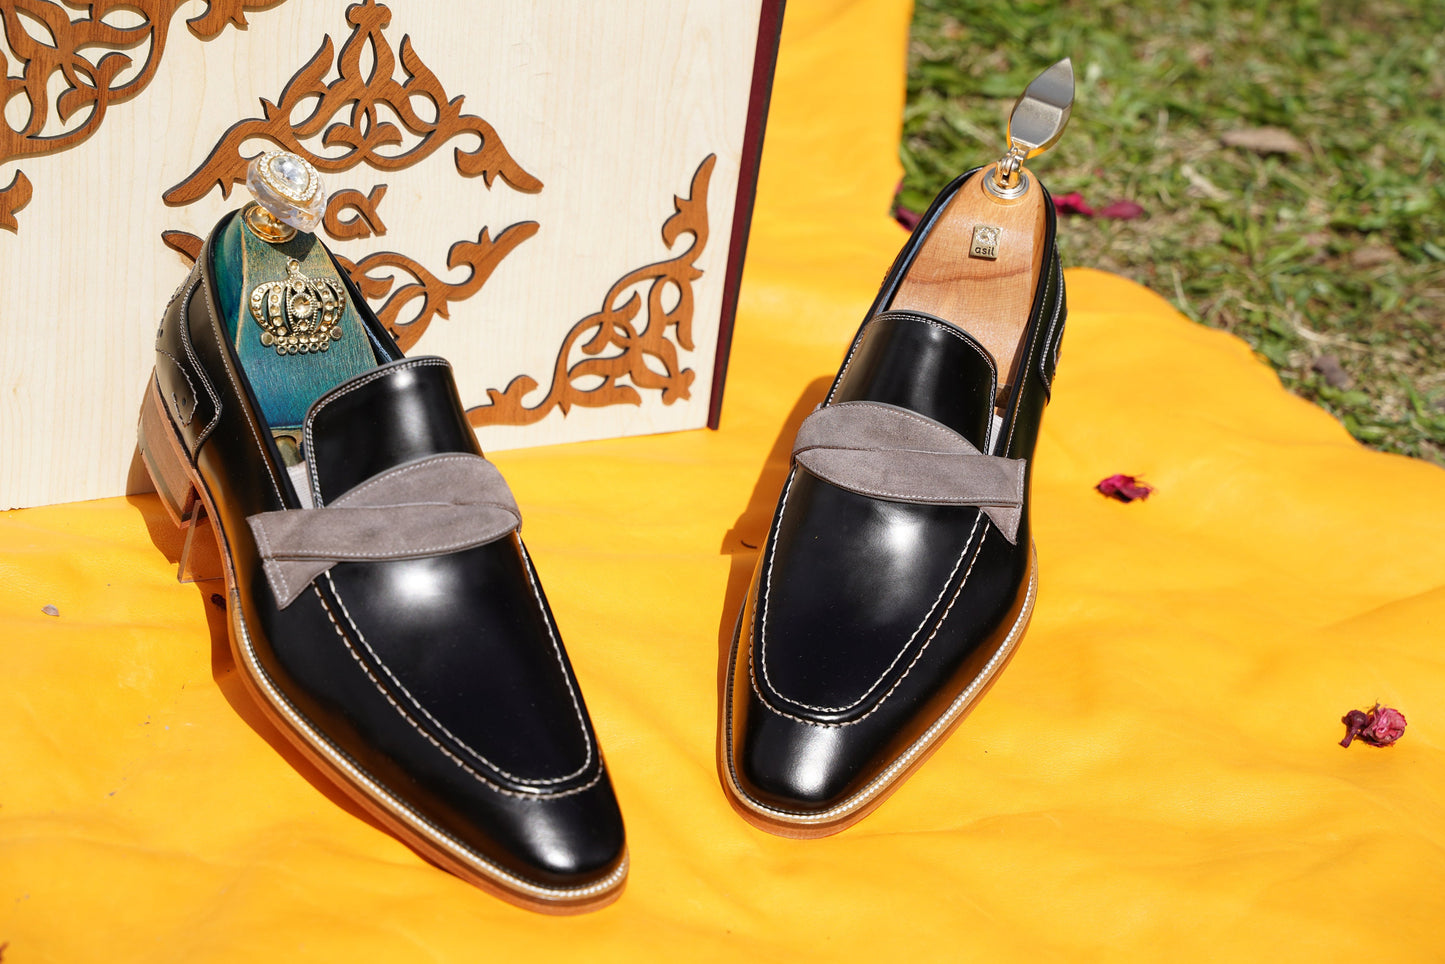 Black Men Loafer Dress Shoes Groom Wedding Shoe Elegant Premium Men Shoes Genuine Leather Handmade Bespoke Made-To-Order